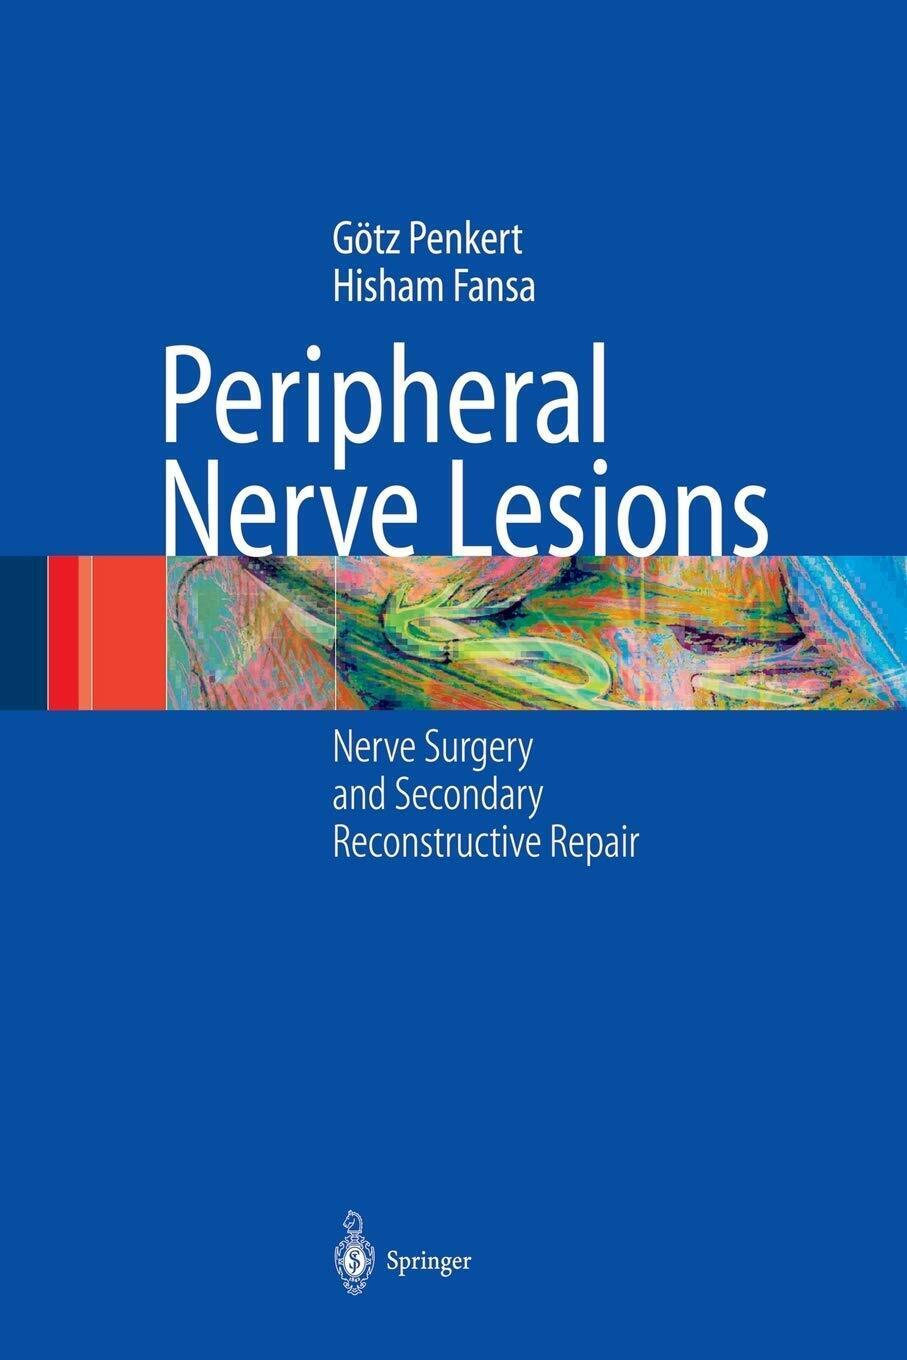 Peripheral Nerve Lesions - Hisham Fansa, G?tz Penkert - Springer, 2010